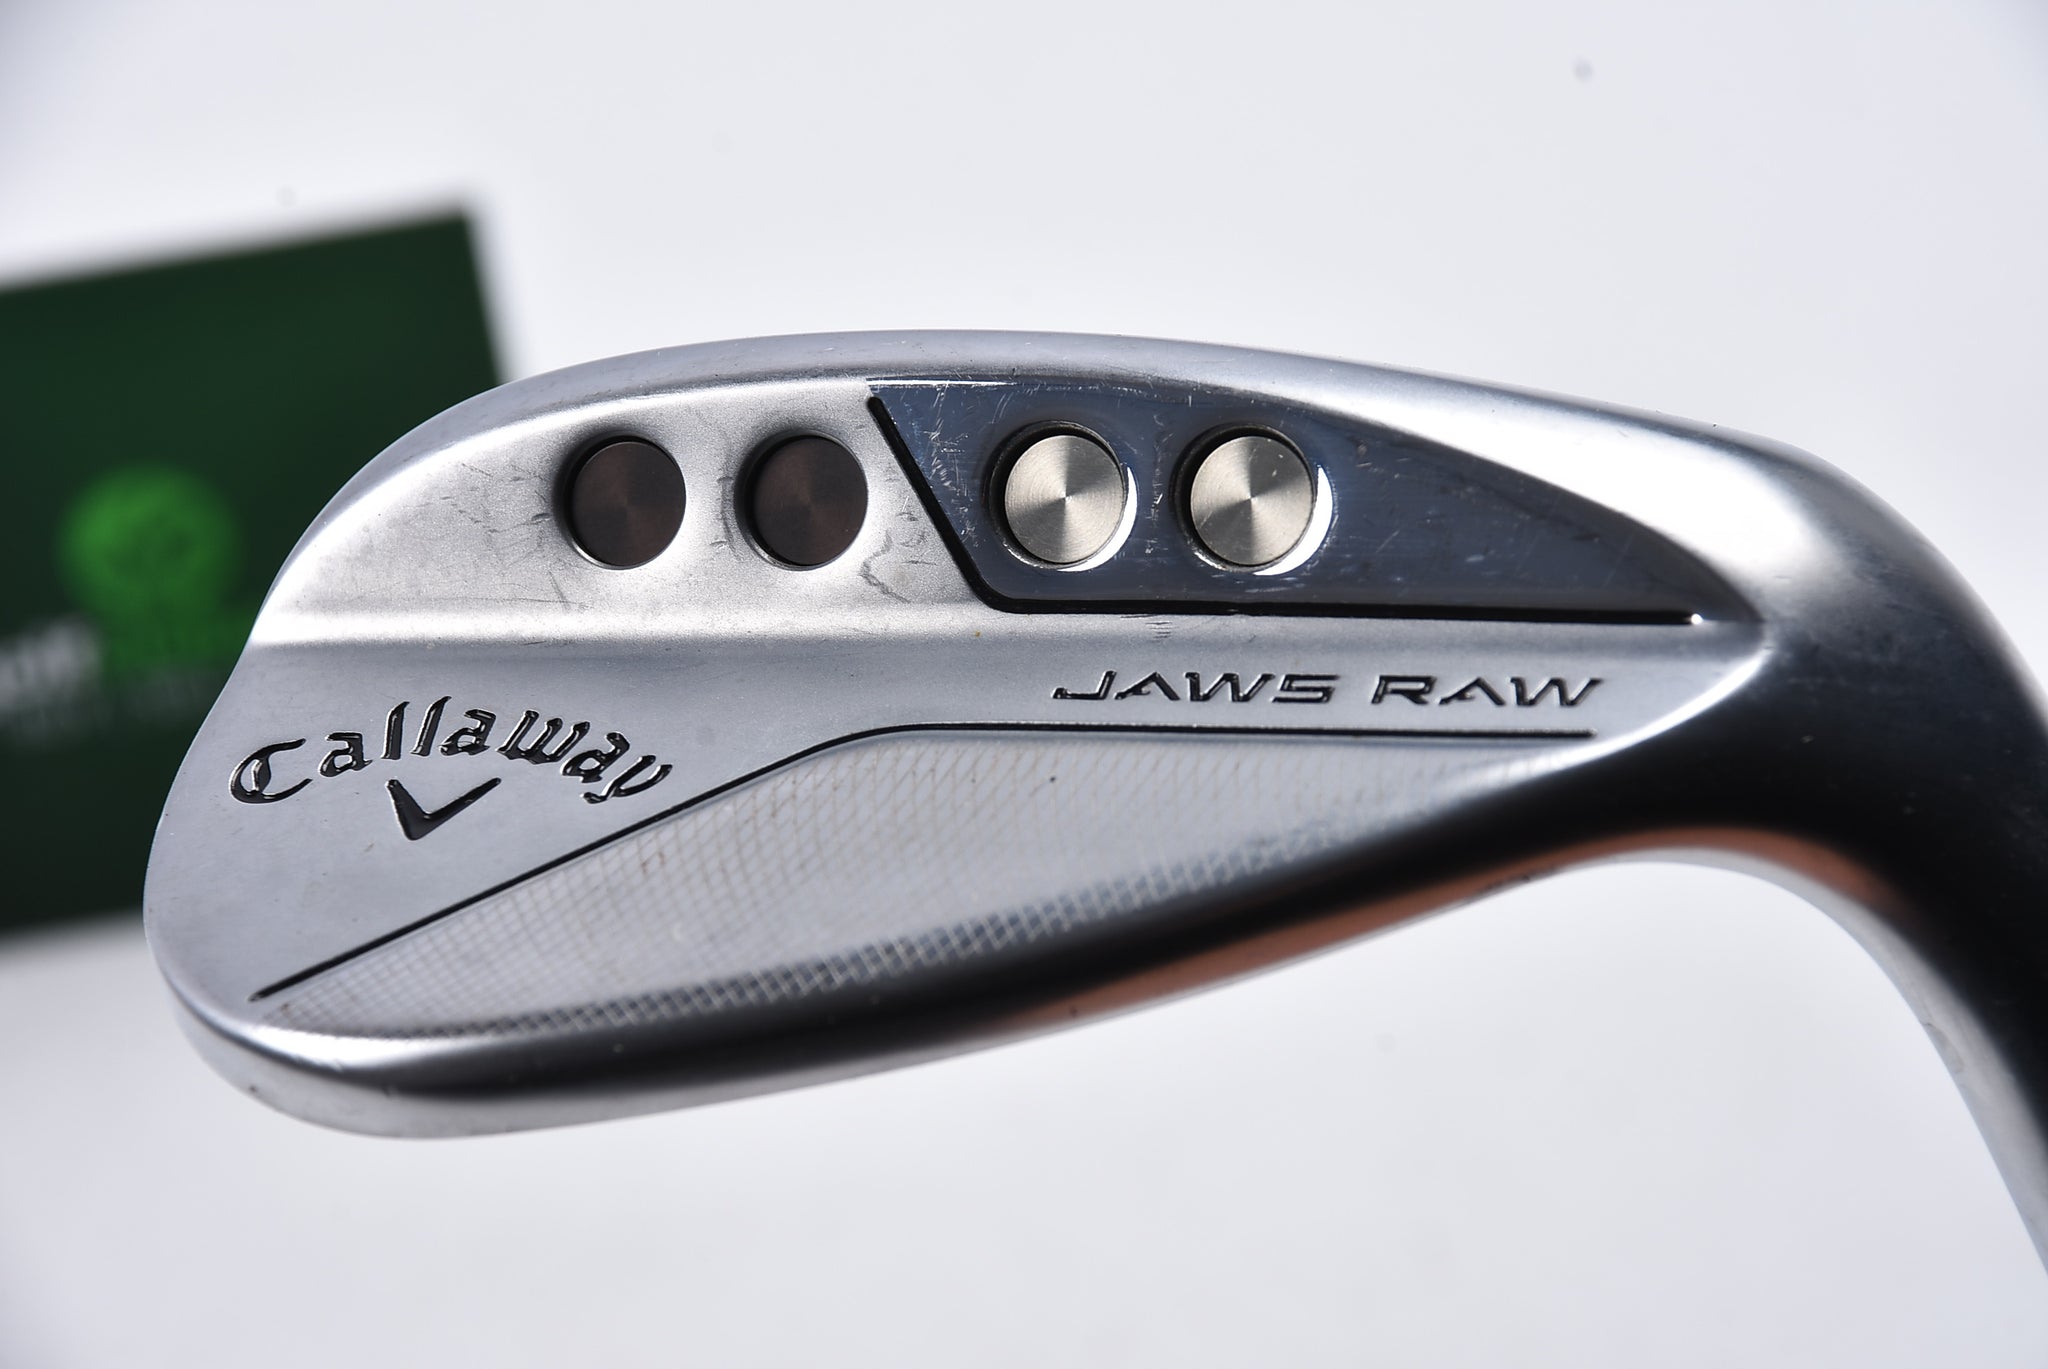 Callaway Jaws Raw Lob Wedge / 58 Degree / Stiff Flex Dynamic Gold 115